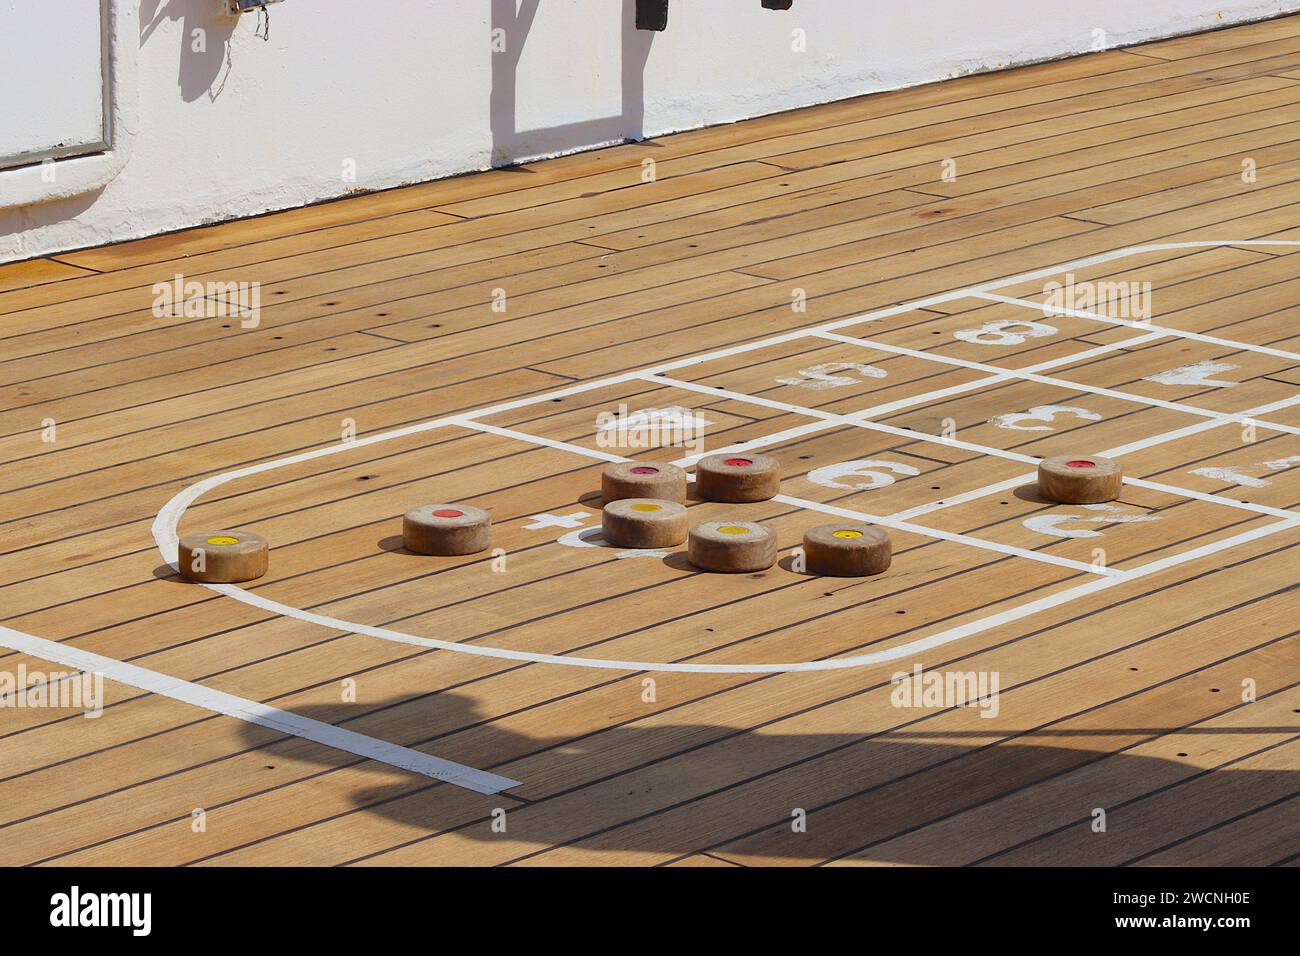 Gruppi stretti di dischi di shuffleboard illustrano la competitività durante un torneo amichevole a bordo del ponte Sun della nave da crociera Arcadia. Foto Stock